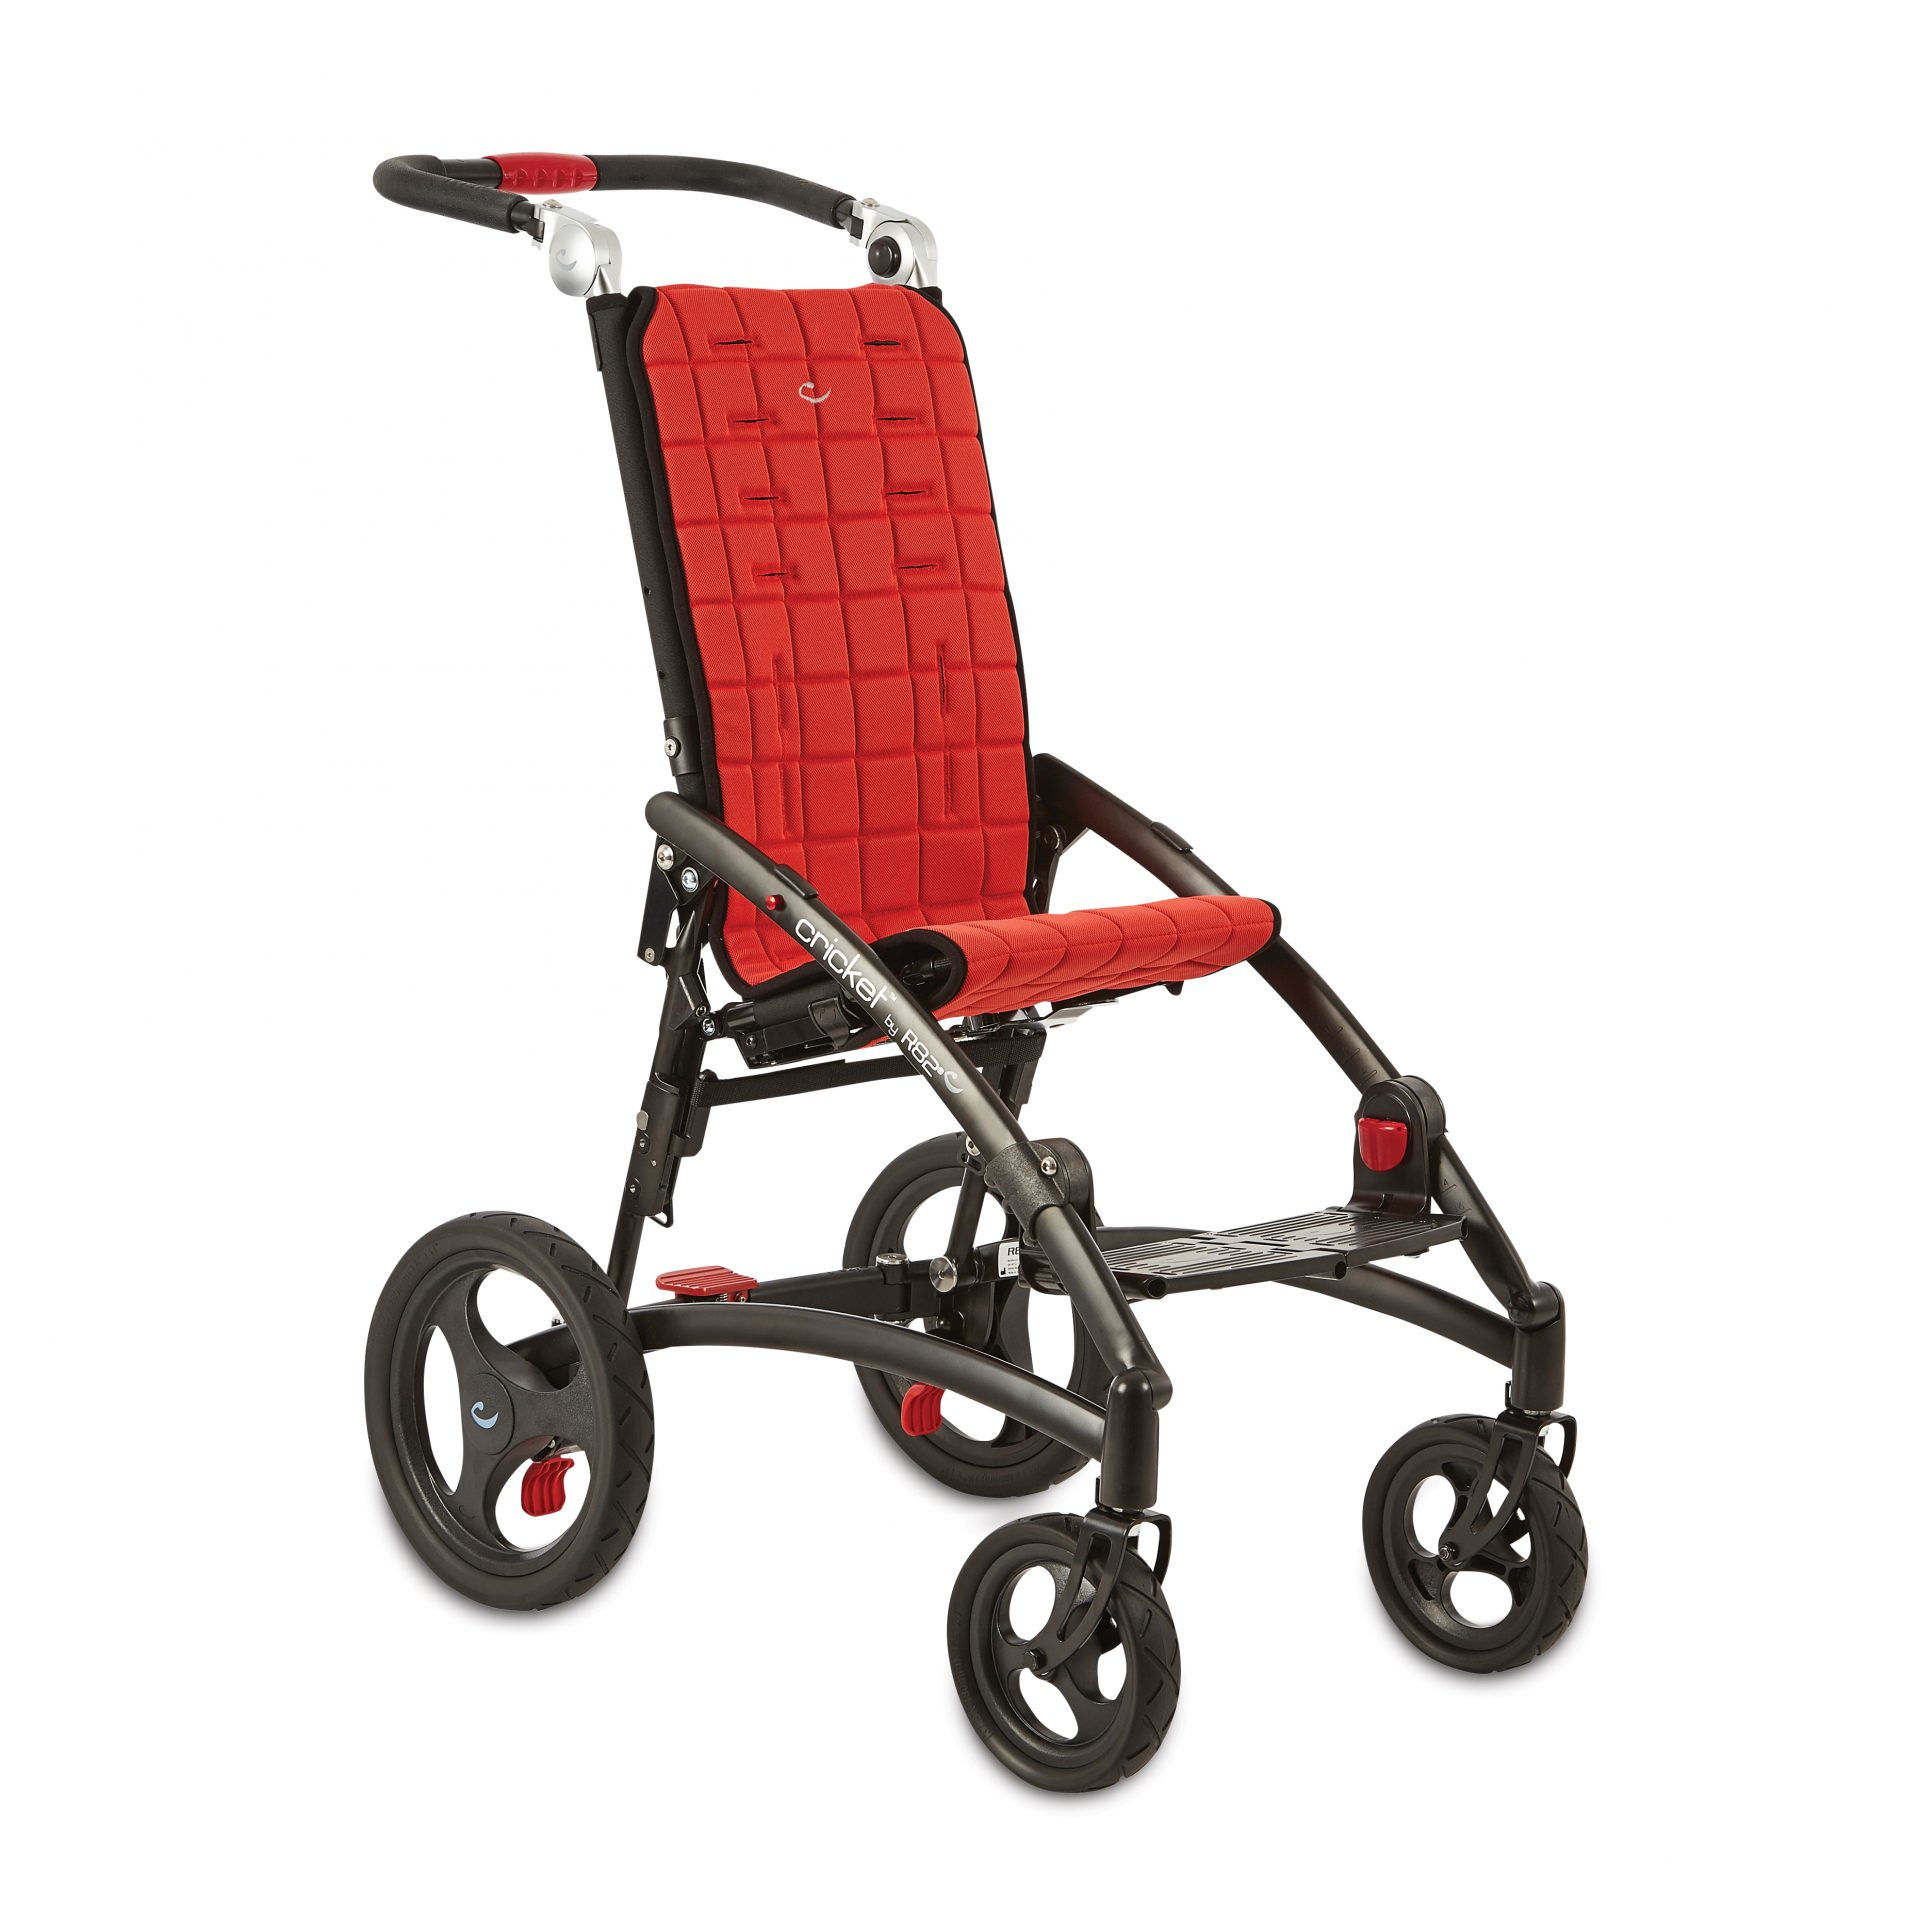 Кресло коляска для инвалида ребенка прогулочная. Cricket r82 коляска. R82 коляски для детей с ДЦП. Инвалидная коляска r82. Коляска Серваль r82.